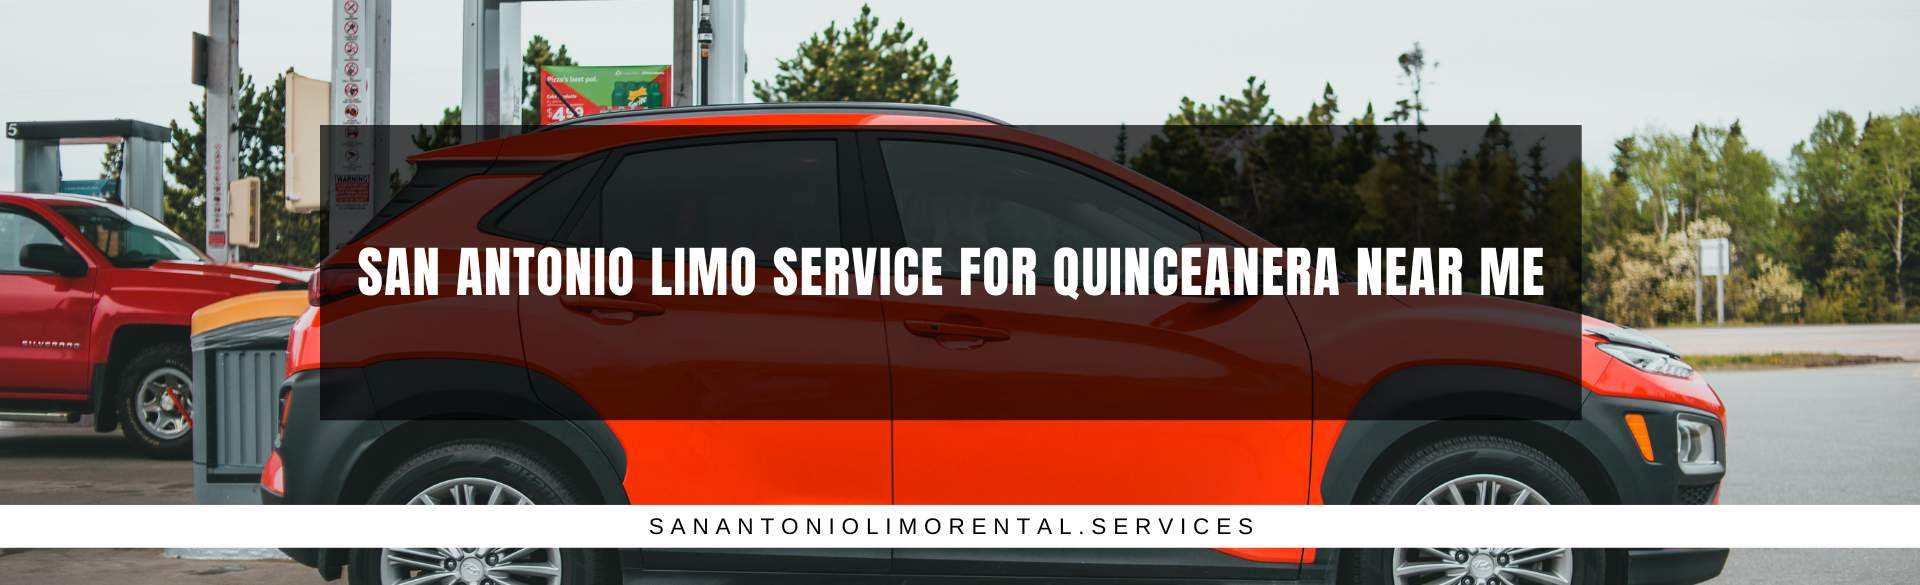 San Antonio Limo Service for Quinceañera